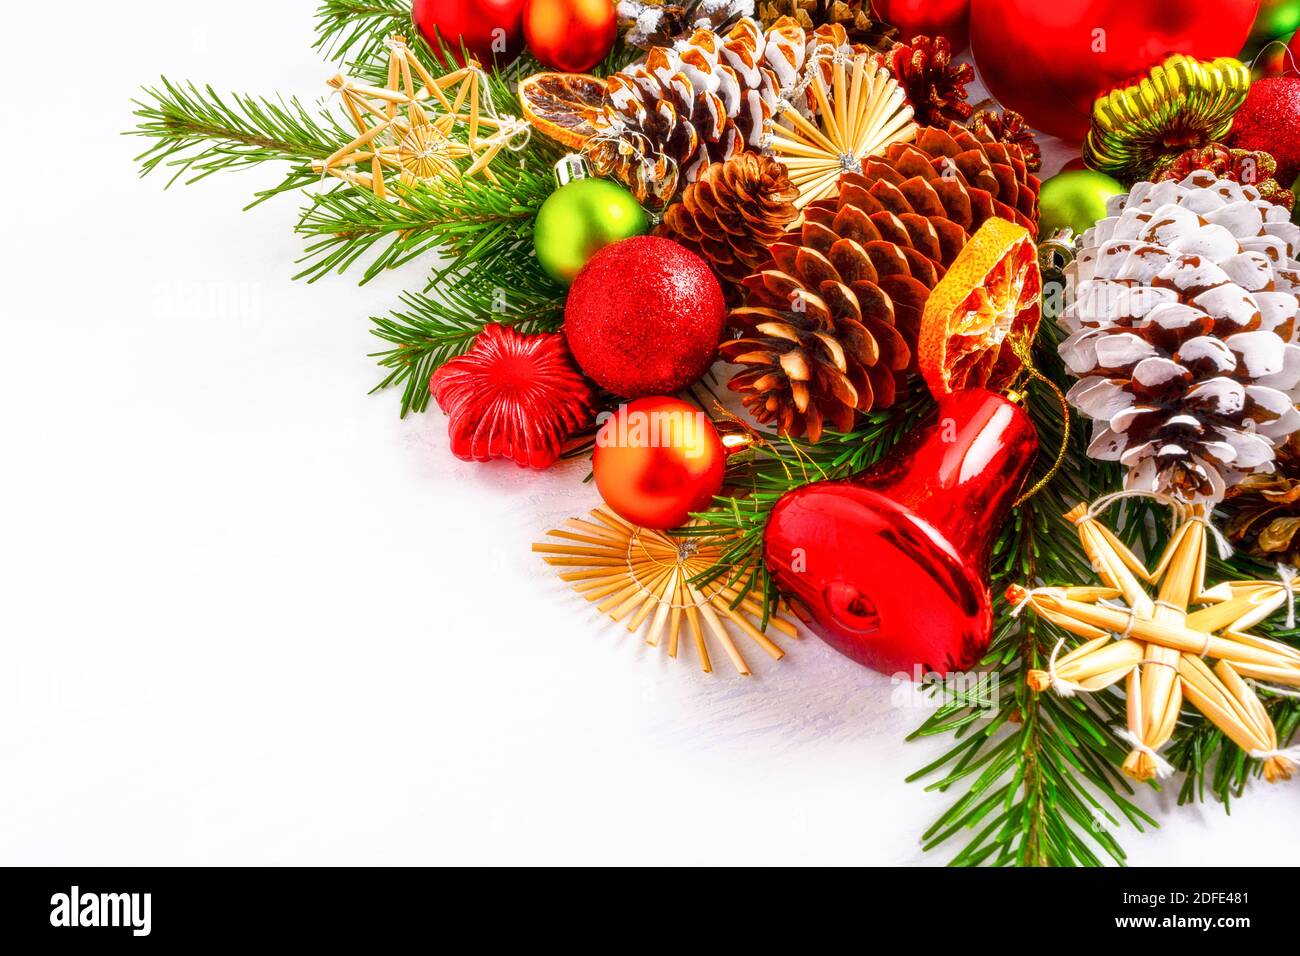 Décoration de Noël avec tranches d'orange séchées, cloche rouge et étoile de paille. Arrière-plan de Noël avec branches de sapin et cônes de pin. Copier sp Banque D'Images